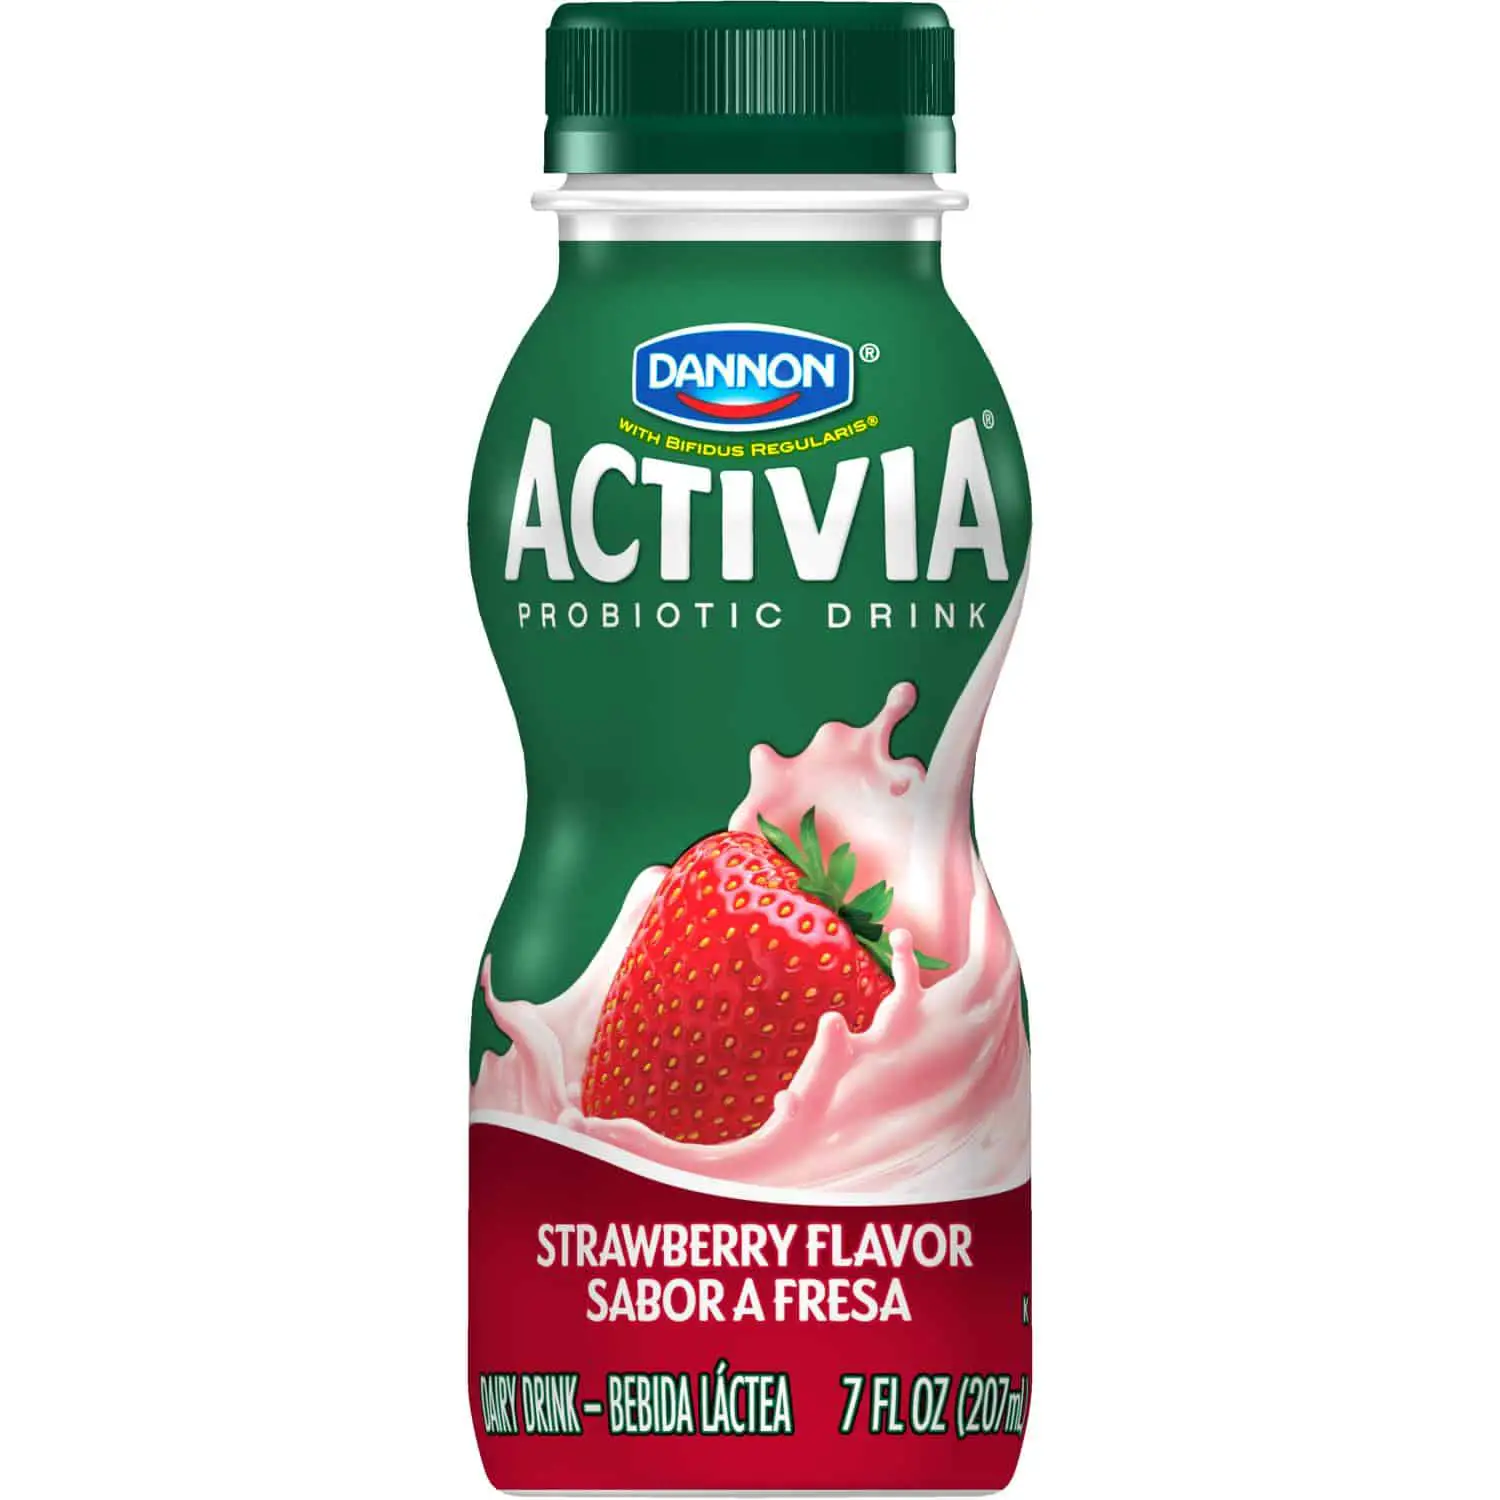 Dannon Activia Probiotic Yogurt Drink (Strawberry), 7oz.: Amazon.com ...